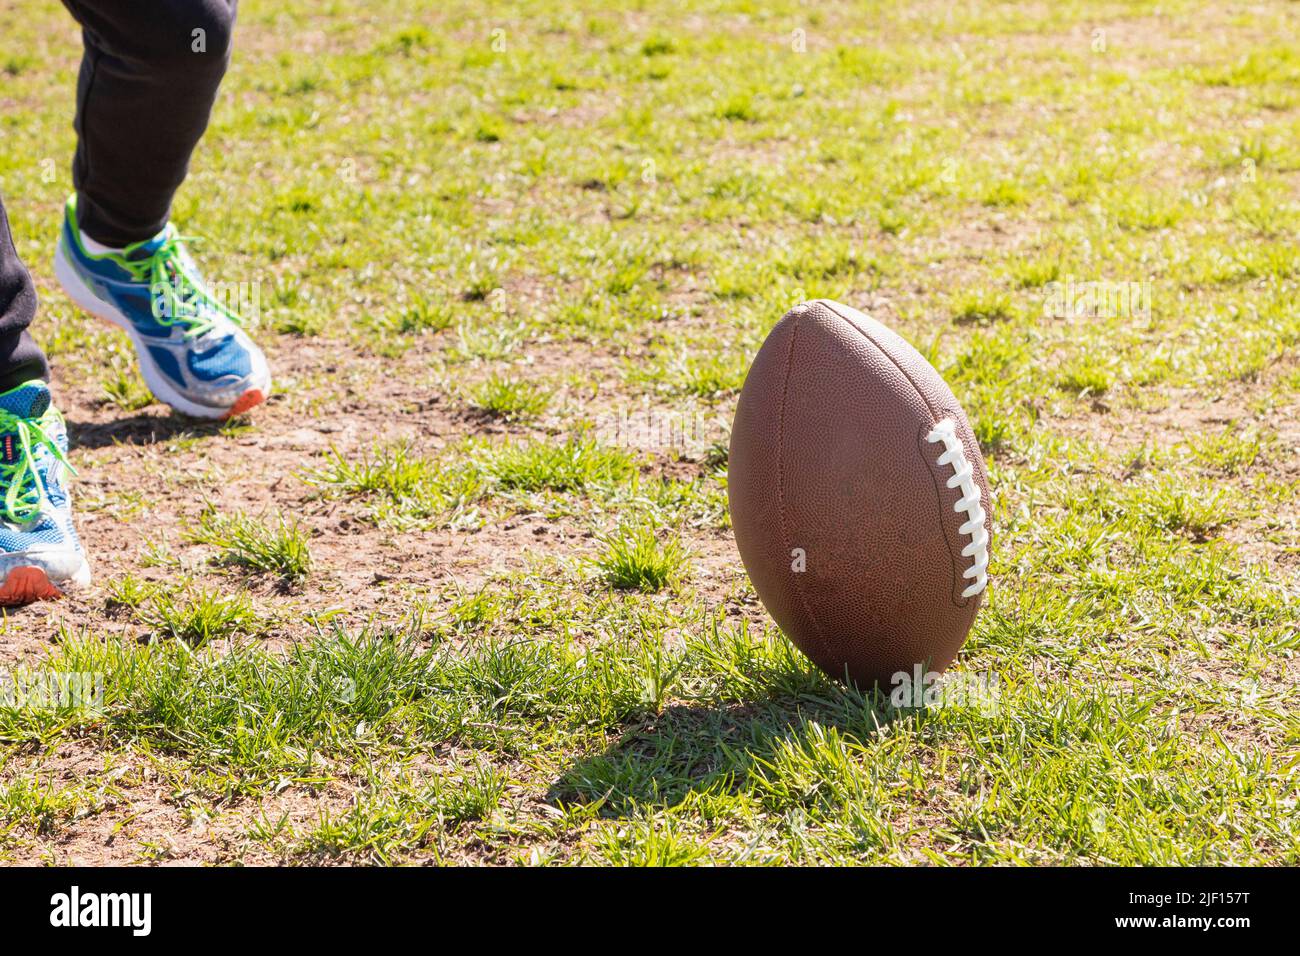 Su un campo d'erba c'è una palla da calcio americana e i piedi di una persona irriconoscibile indossando scarpe da ginnastica. Foto Stock